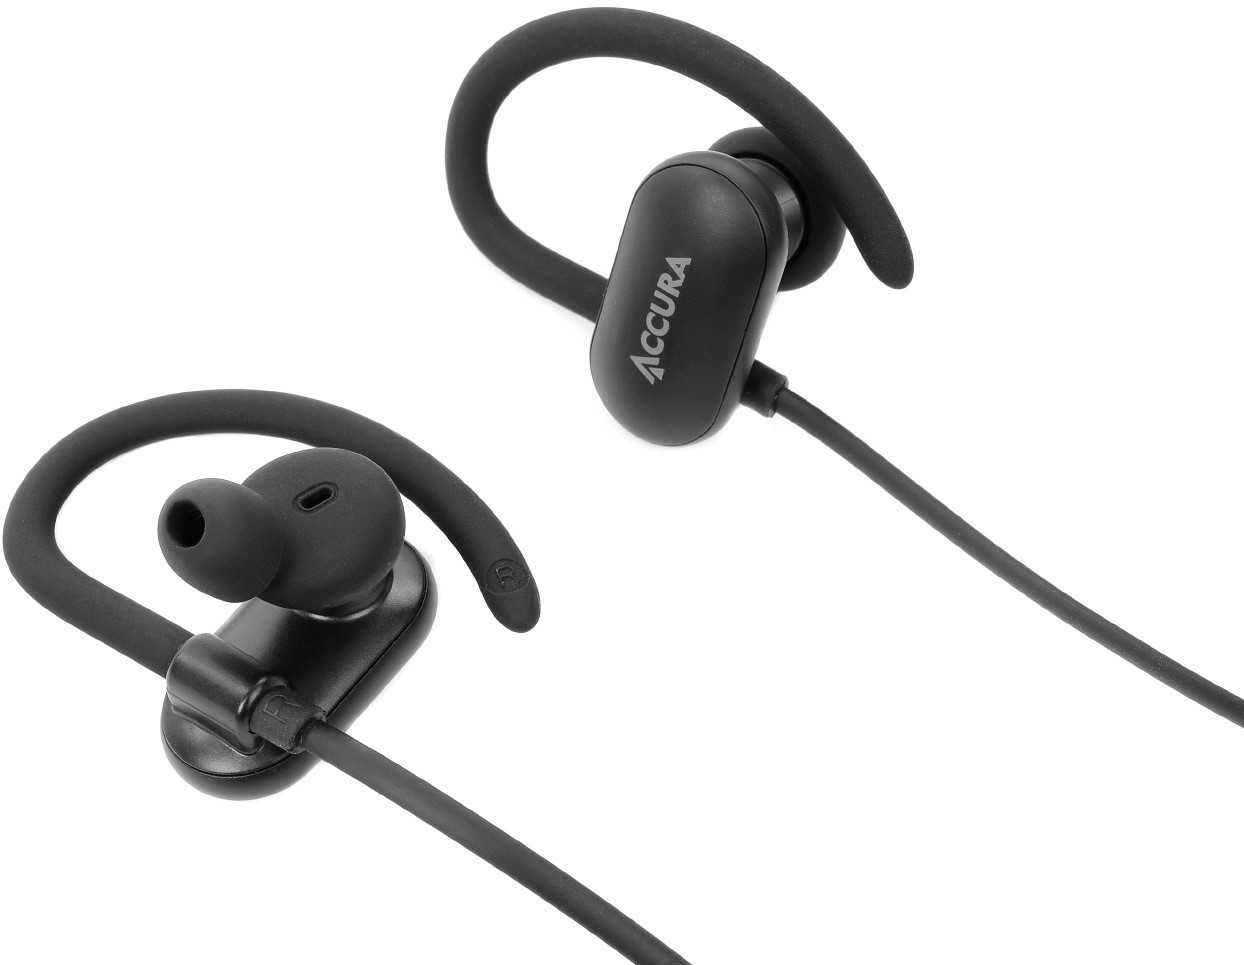 Nowe słuchawki bluetooth Accura Grove ACC-S1726